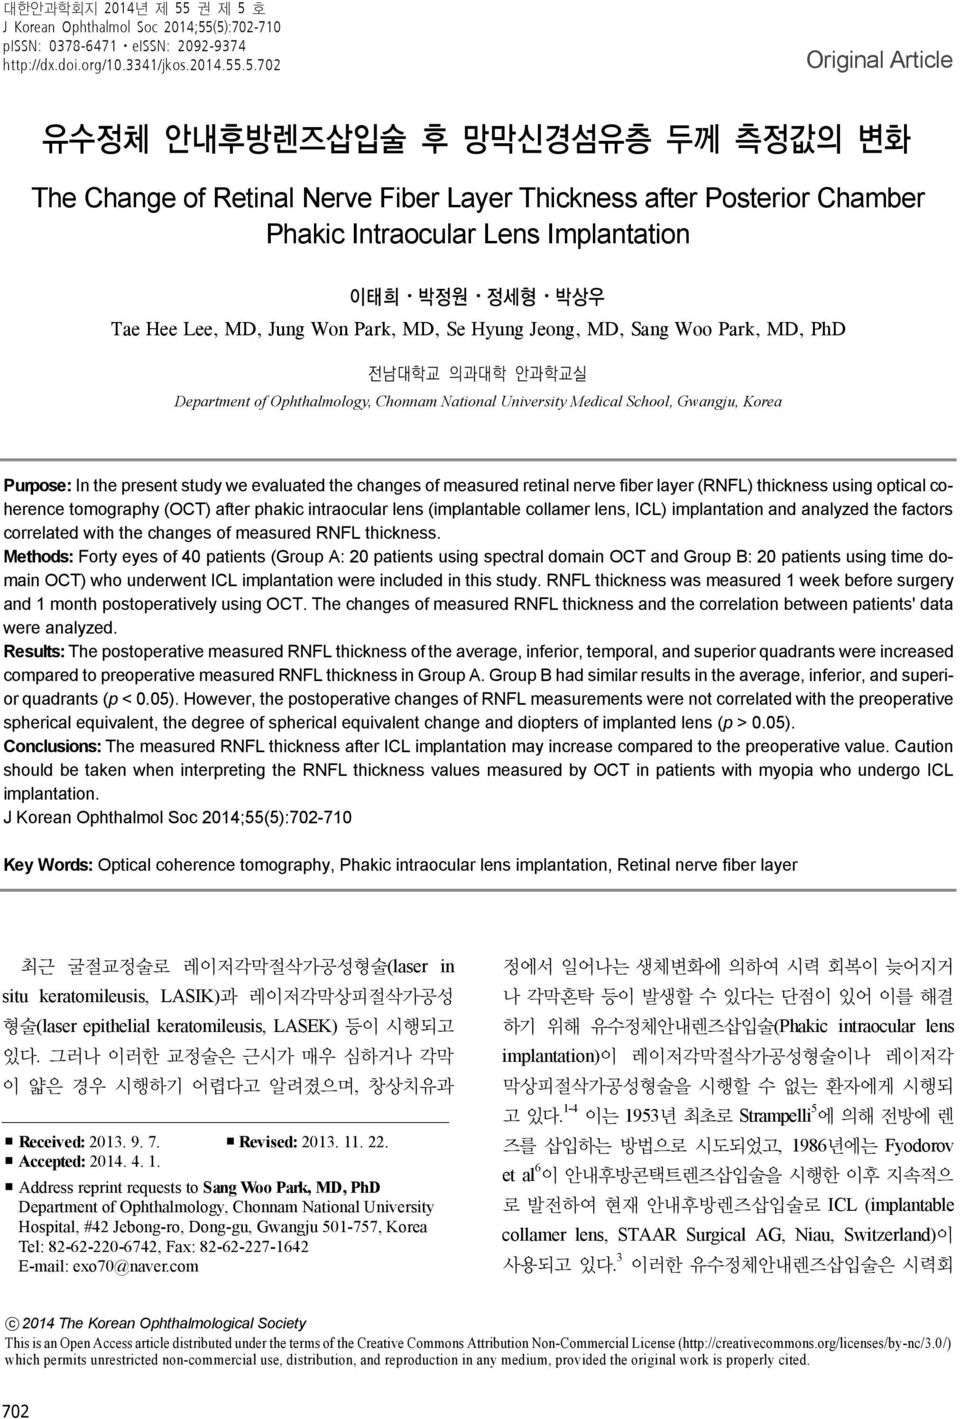 호 J Korean Ophthalmol Soc 14;55